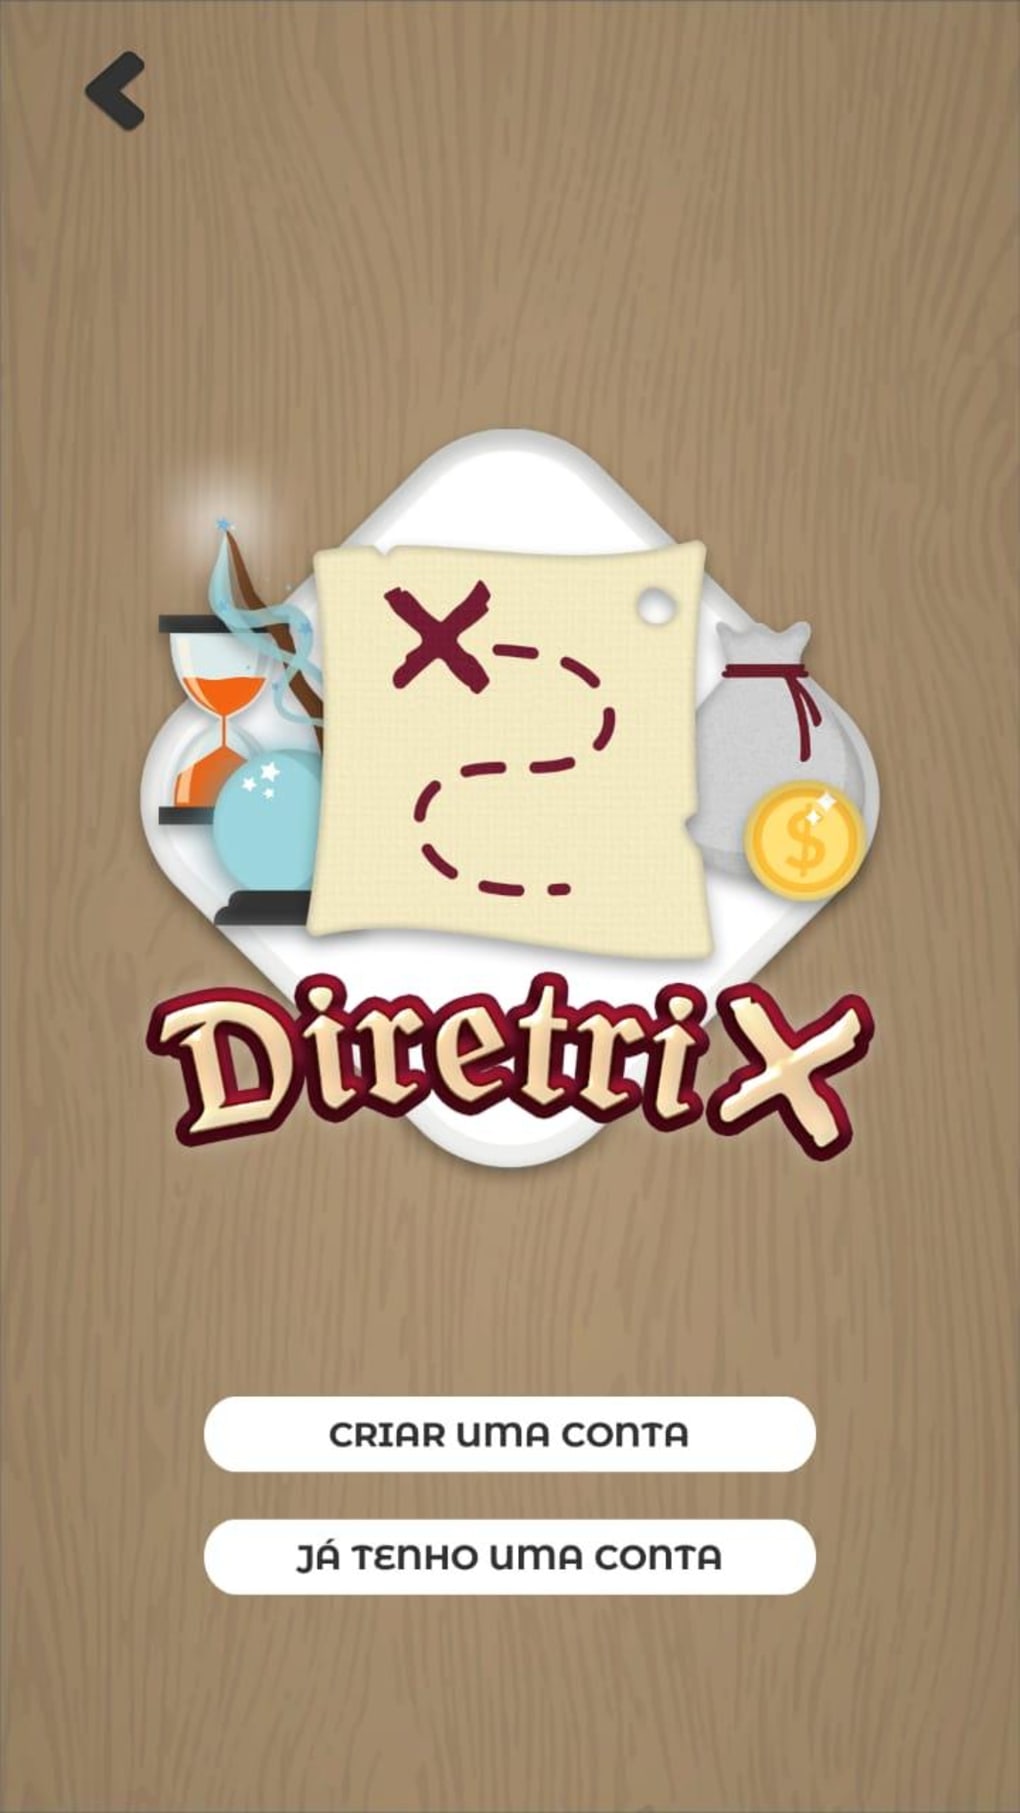 DiretriX o teste vocacional for Android - Download